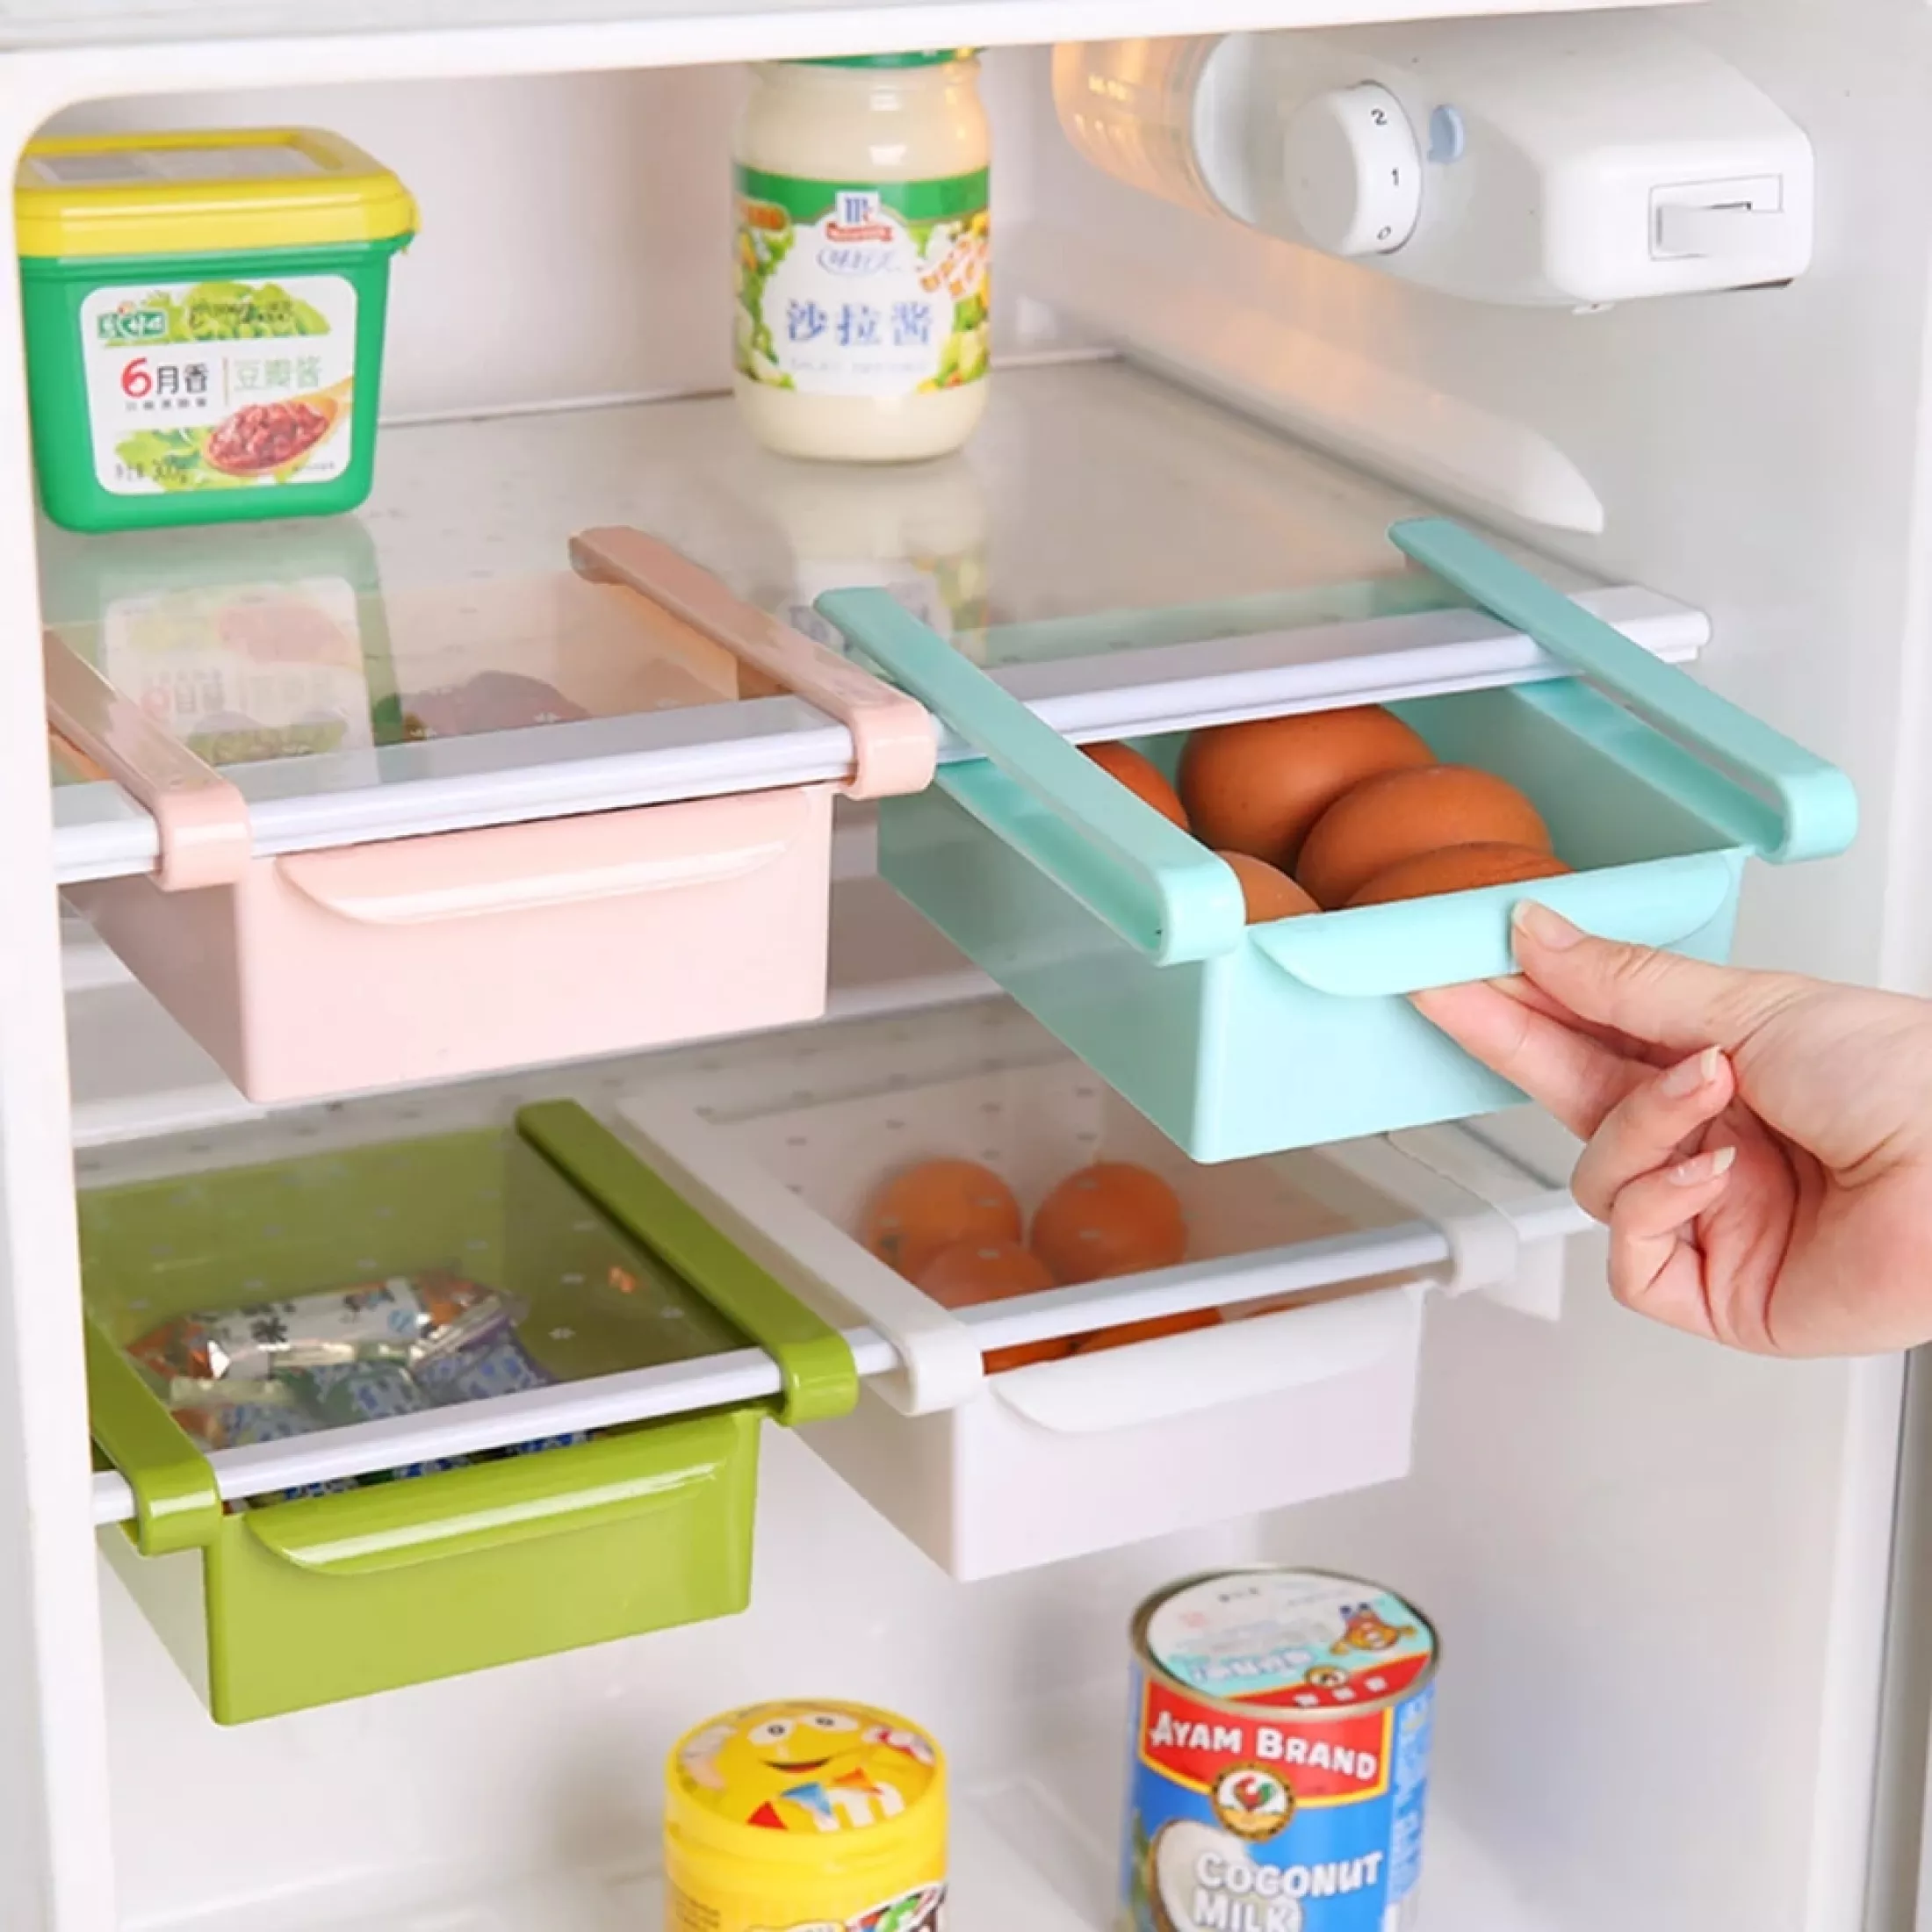 kühlschrank reinigen in 6 leichten schritten mit hausmittel die jeder zu hause hat.jpg